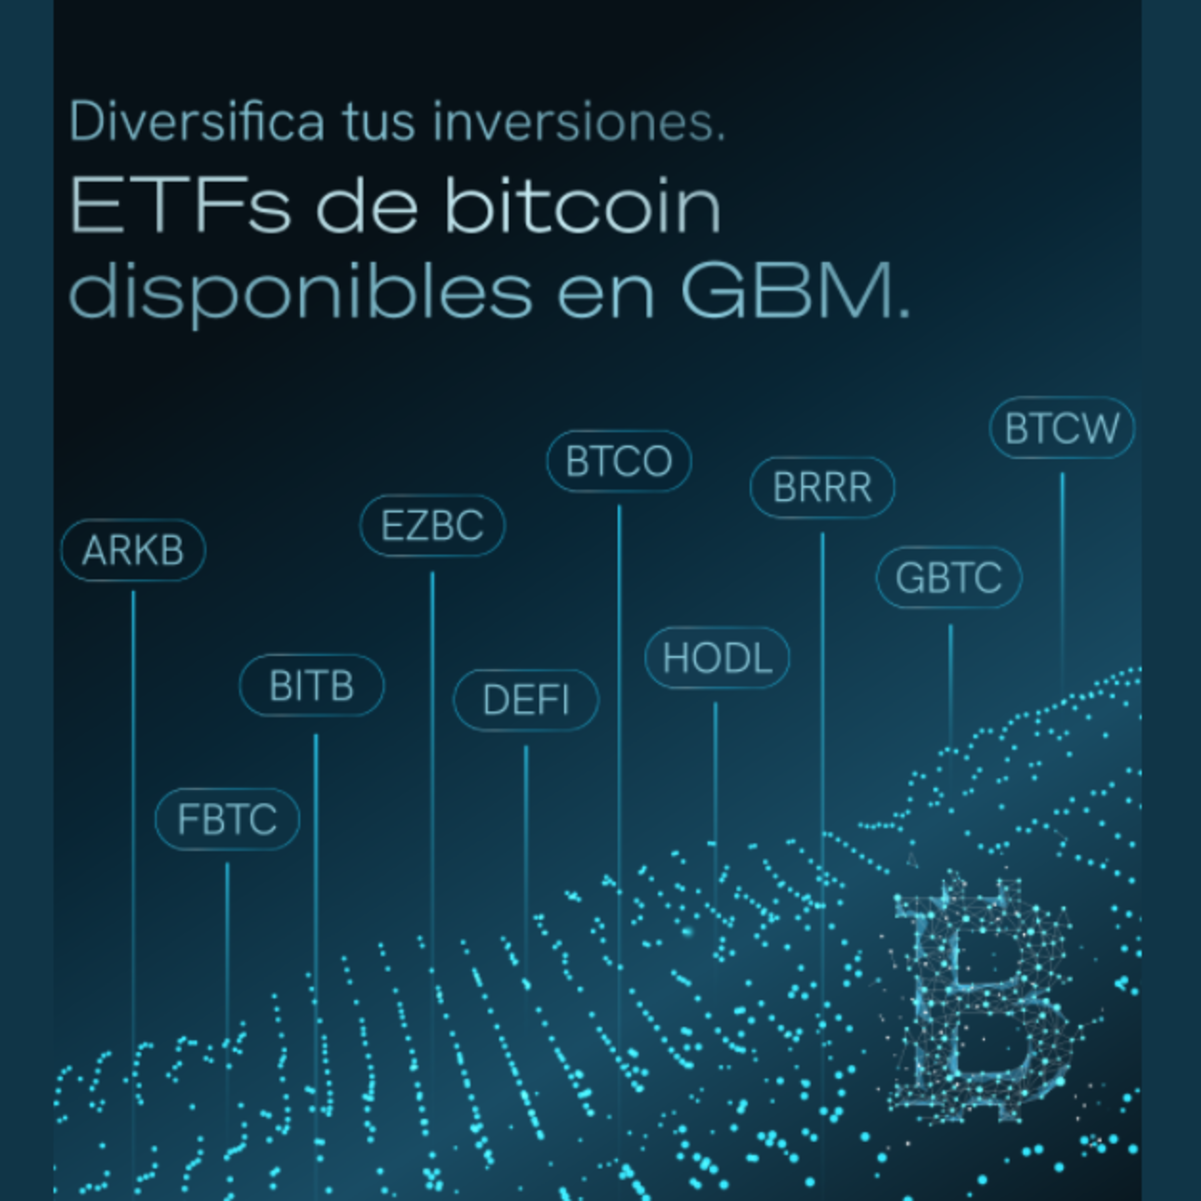 Los inversionistas en México ya pueden adquirir ETFs de Bitcoin a través de GBM